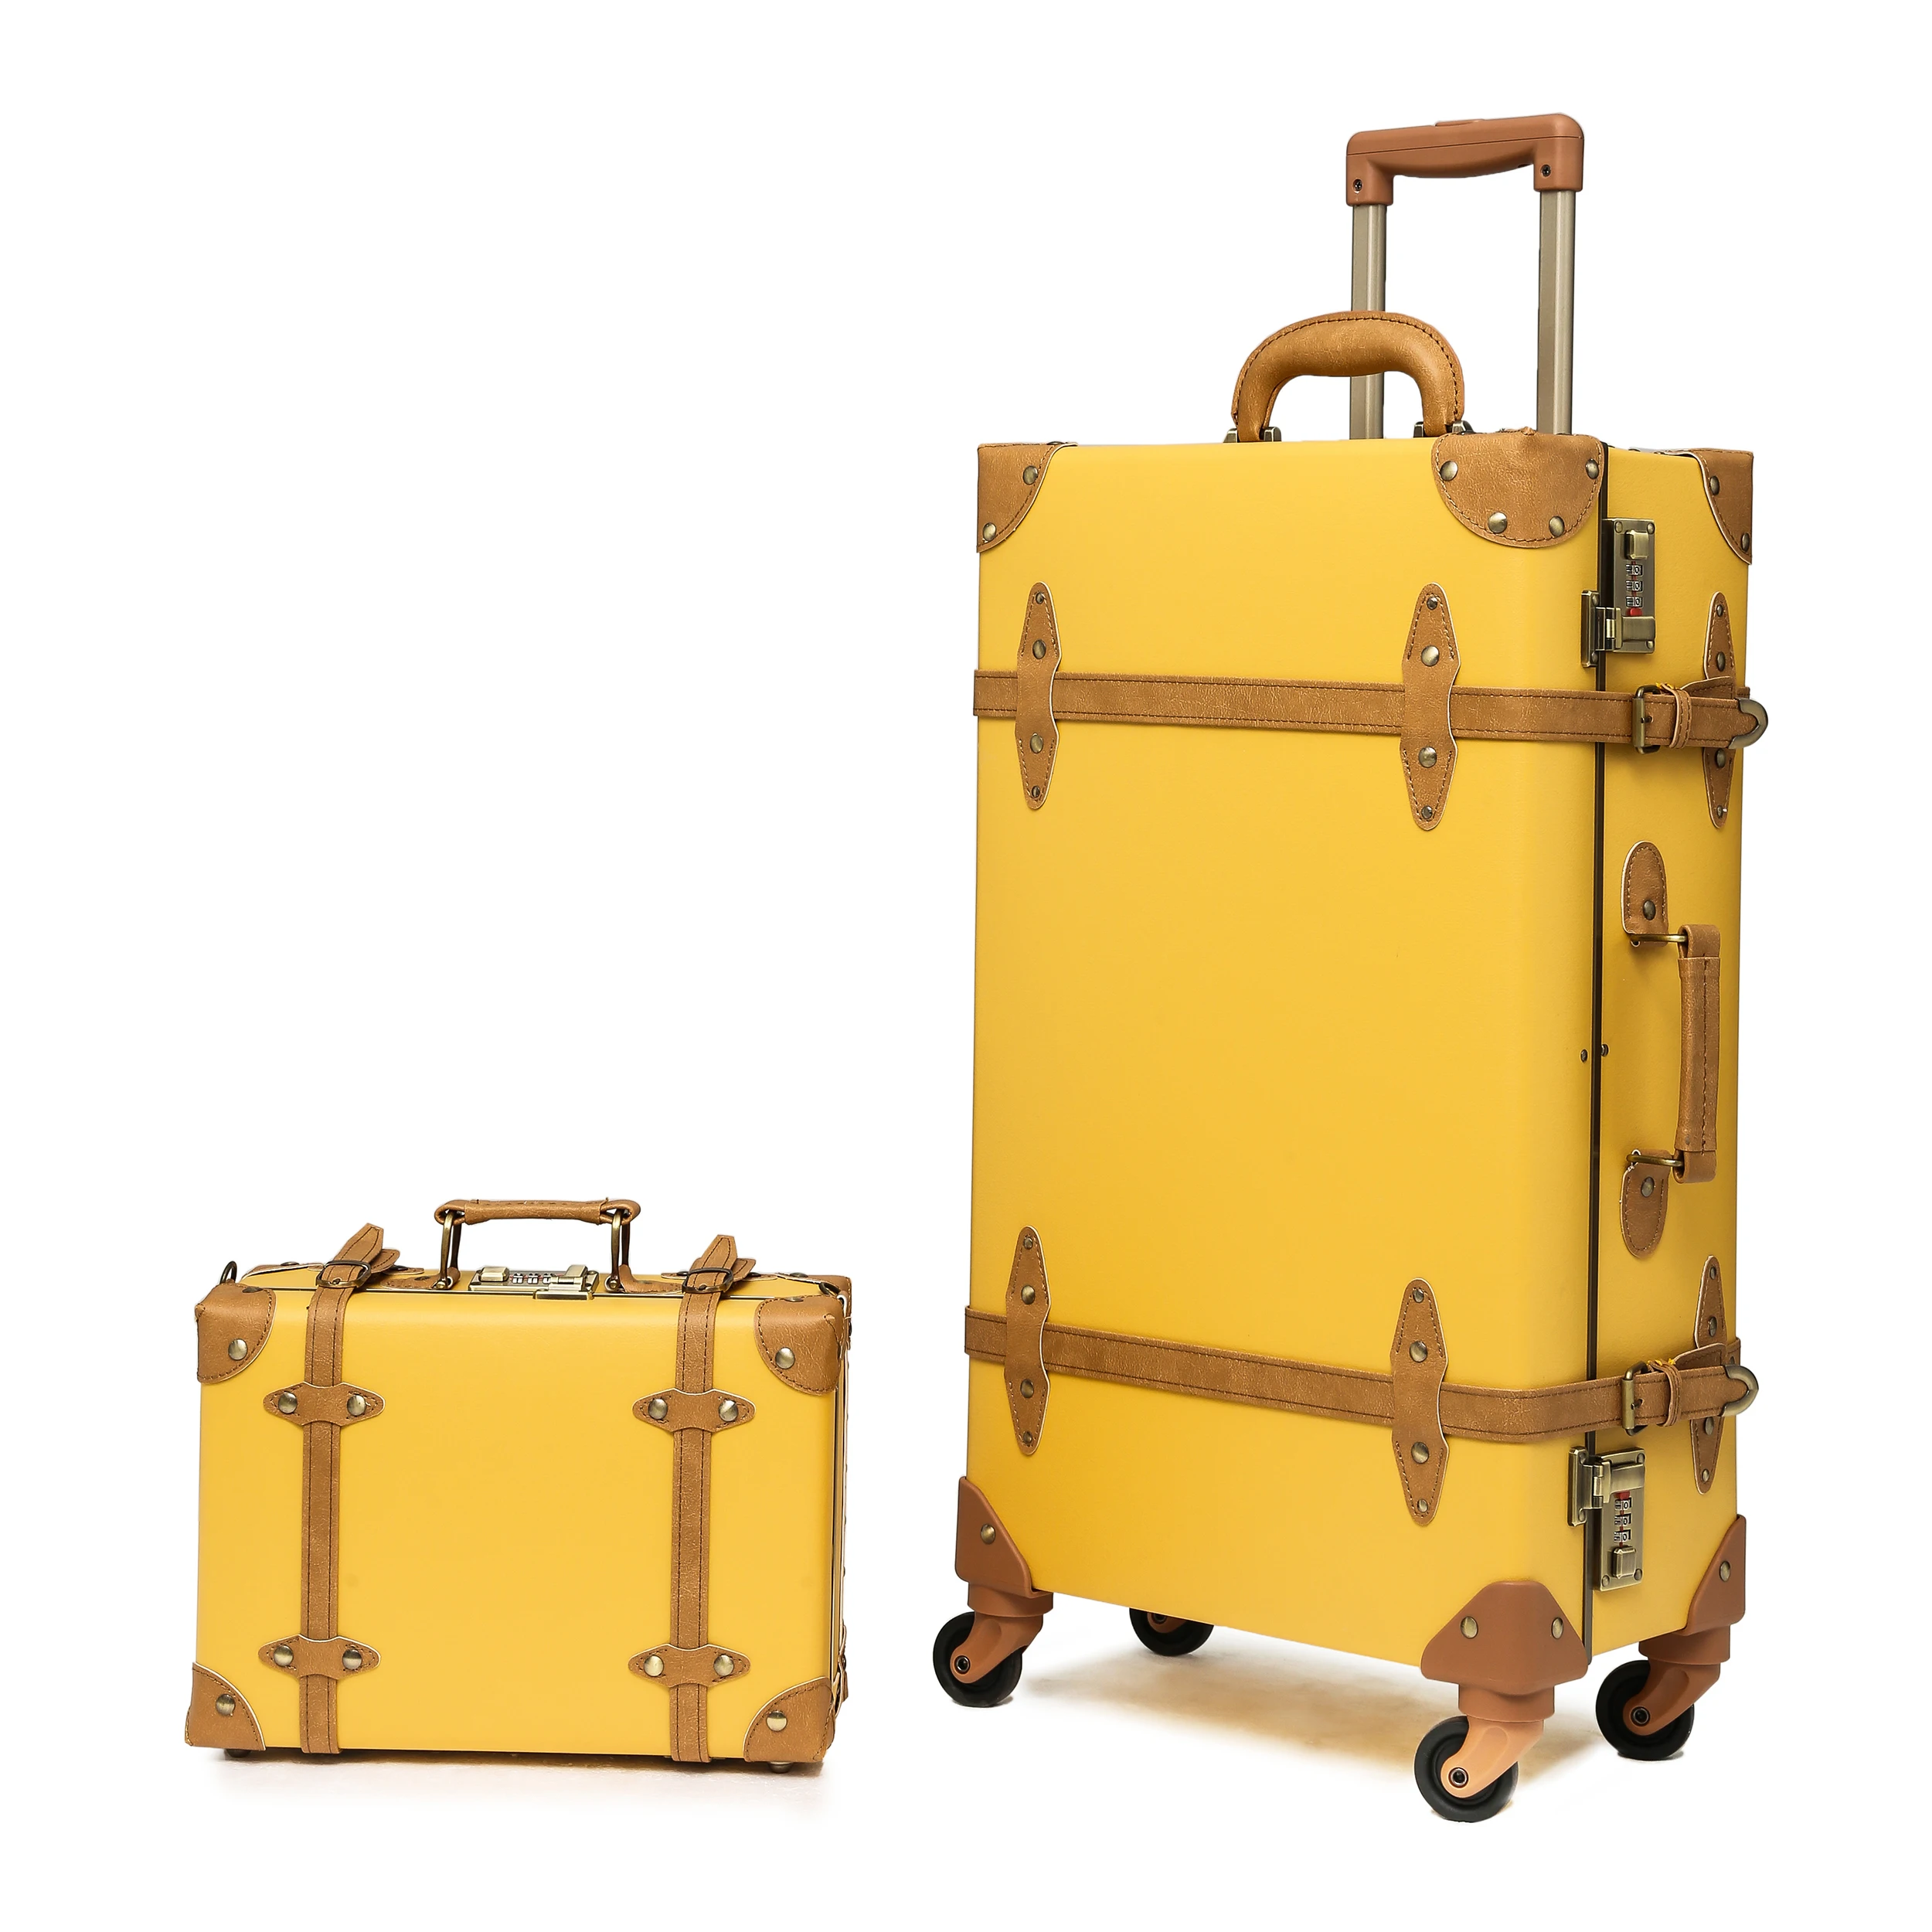 Urecity-Ensemble de bagages vintage 2 pièces, coffre rigide léger